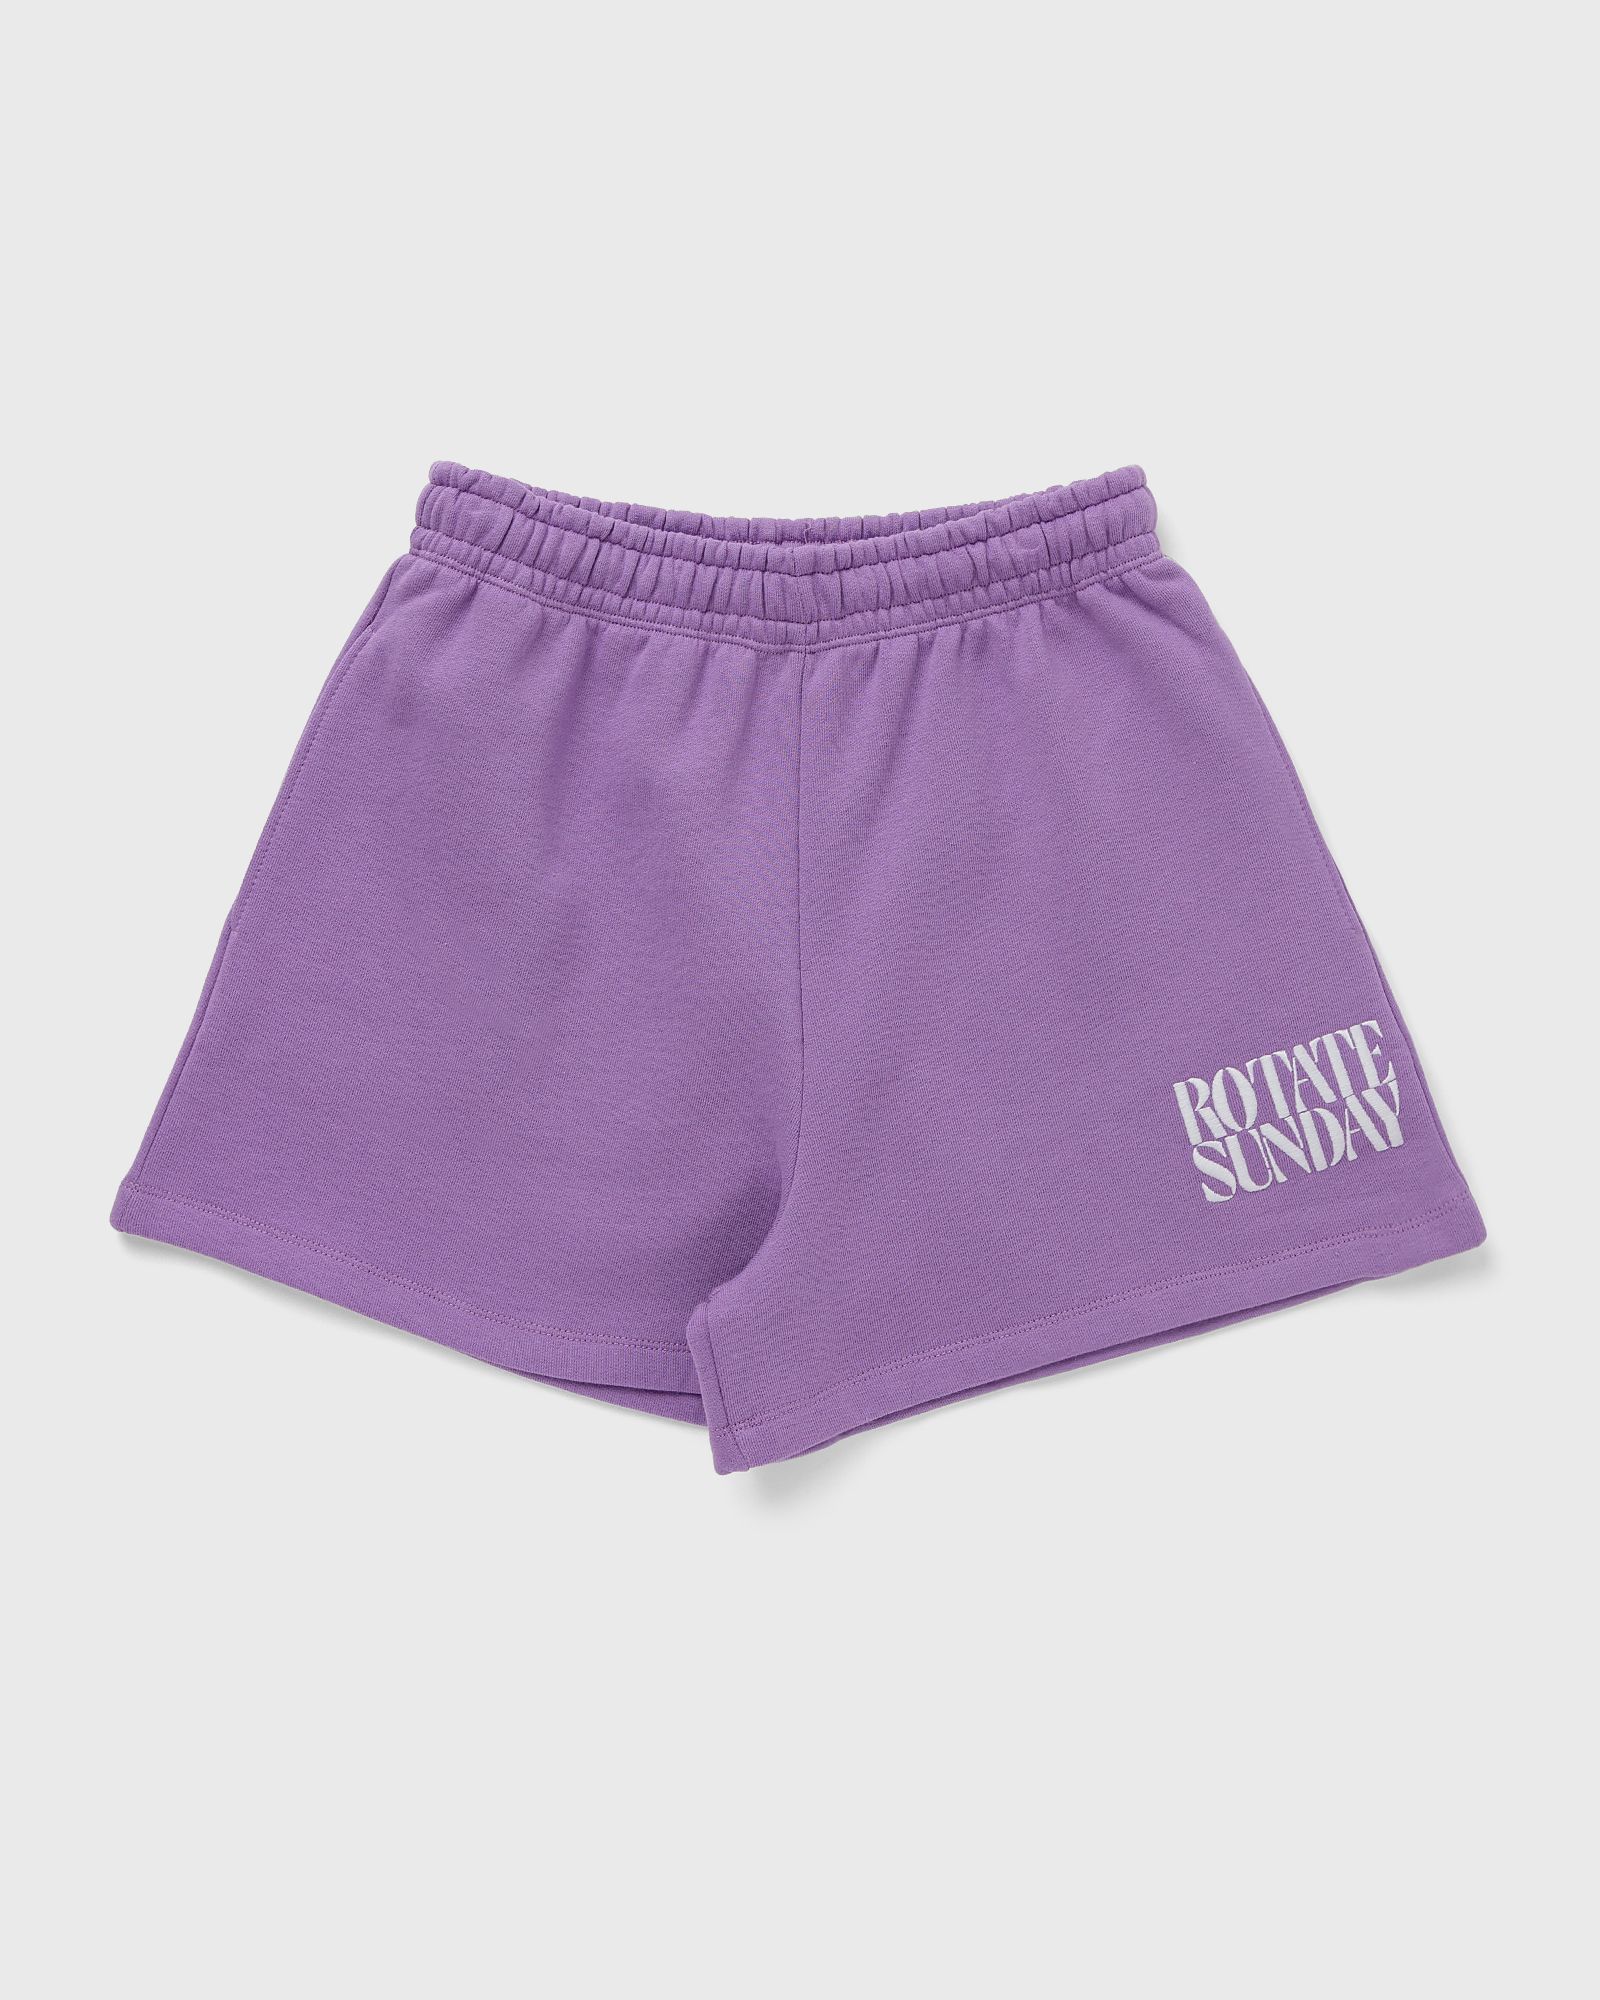 ROTATE Birger Christensen - sweat elasticated shorts women sport & team shorts purple in größe:m